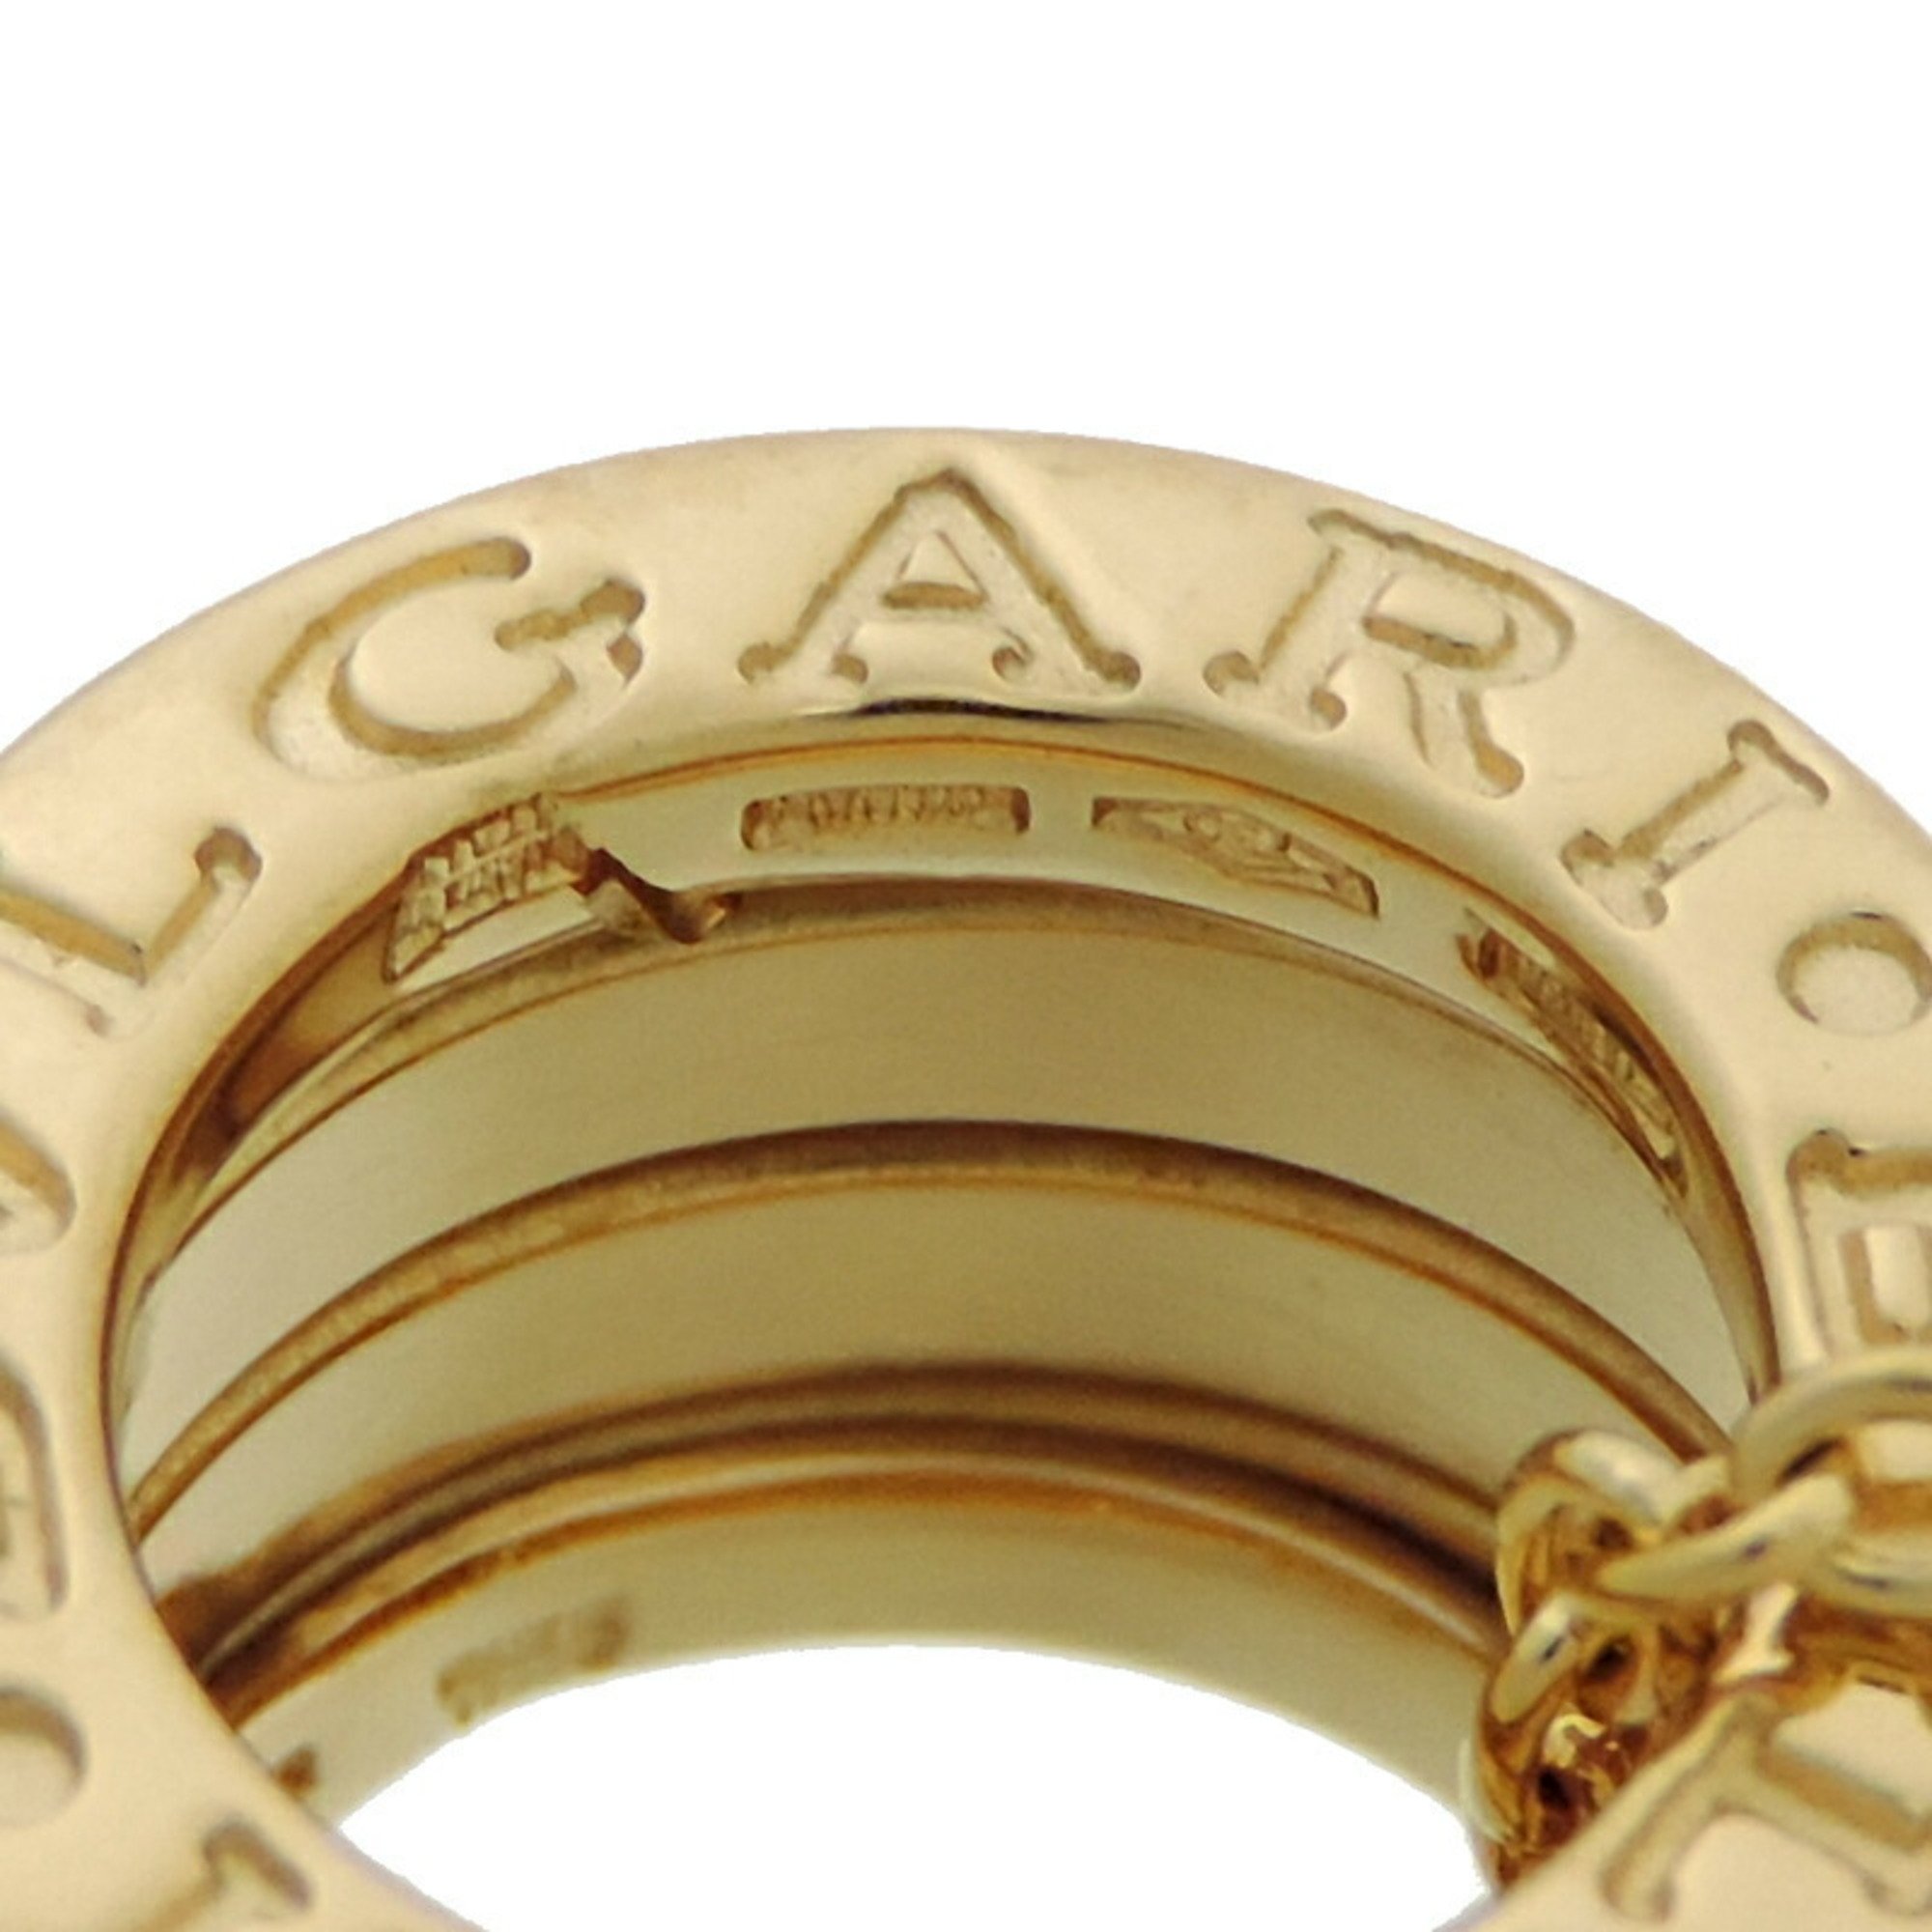 Bvlgari B Zero One Women's/Men's Necklace 750 Yellow Gold